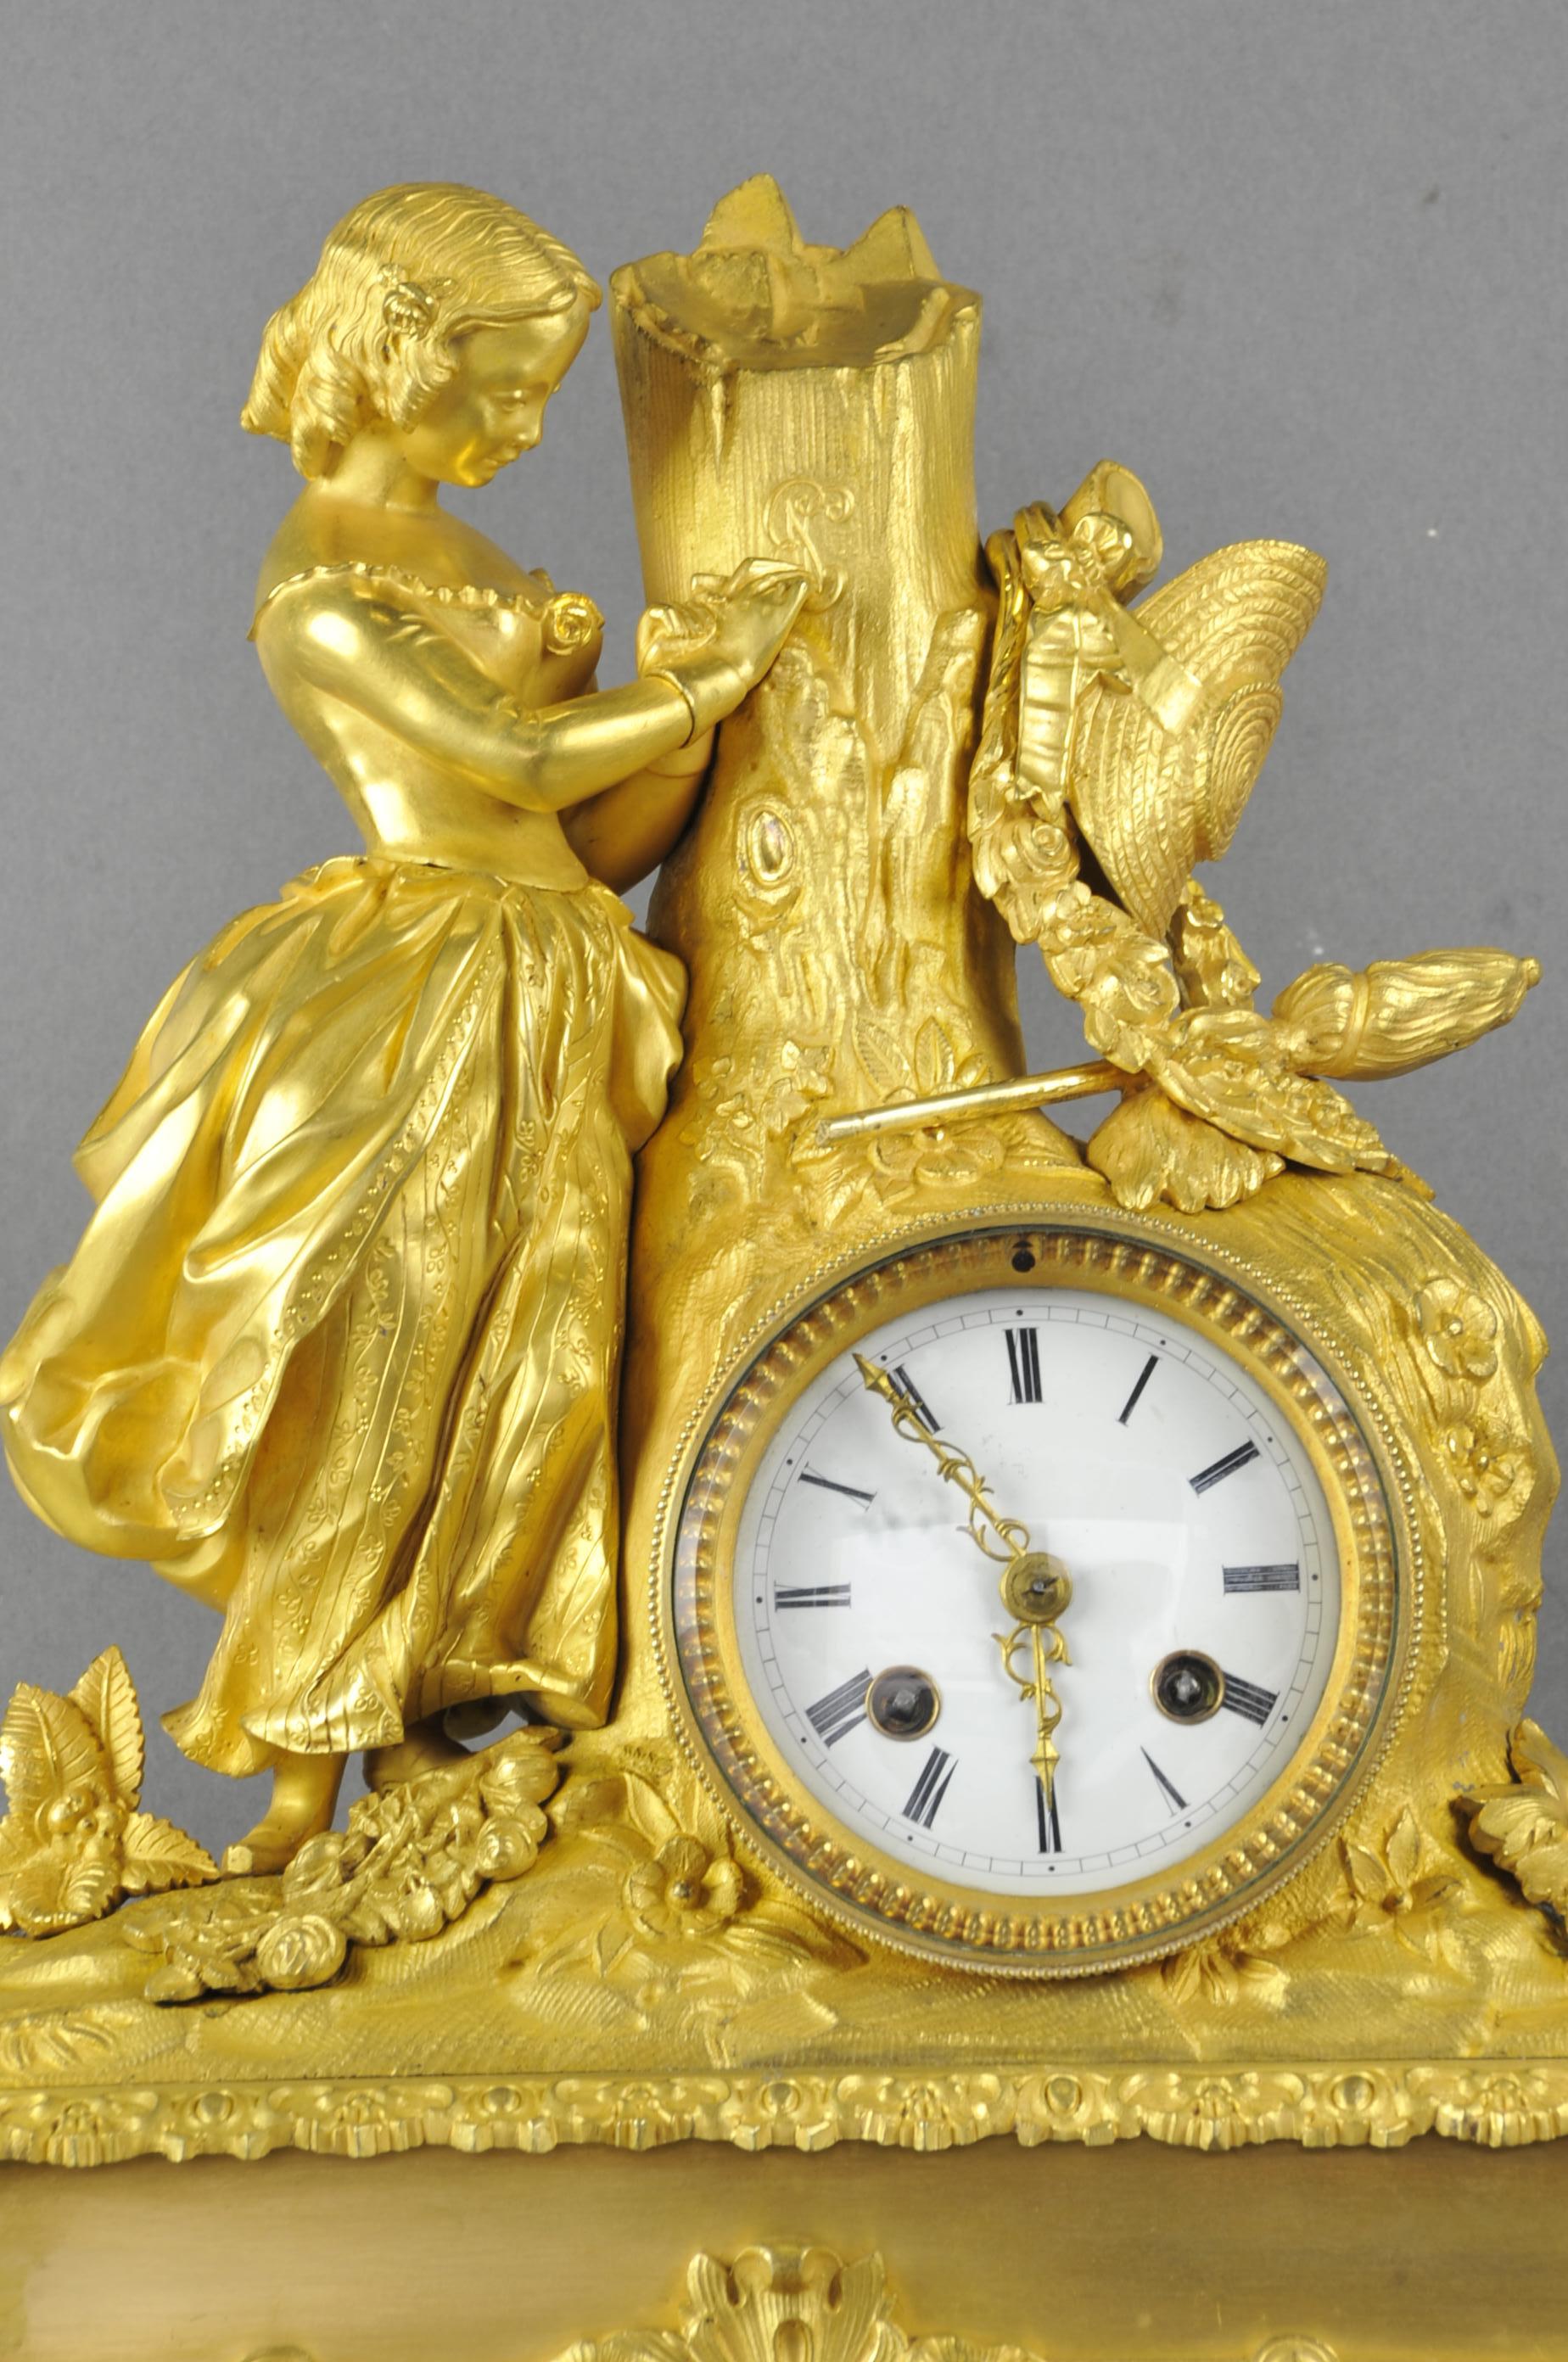 Prächtige Uhr aus fein ziselierter, vergoldeter Bronze aus der Zeit der Restauration (um 1830), die eine für die romantische Bewegung der Zeit charakteristische Szene darstellt.

Liebe zum Detail und gute Handwerkskunst.
Emailliertes